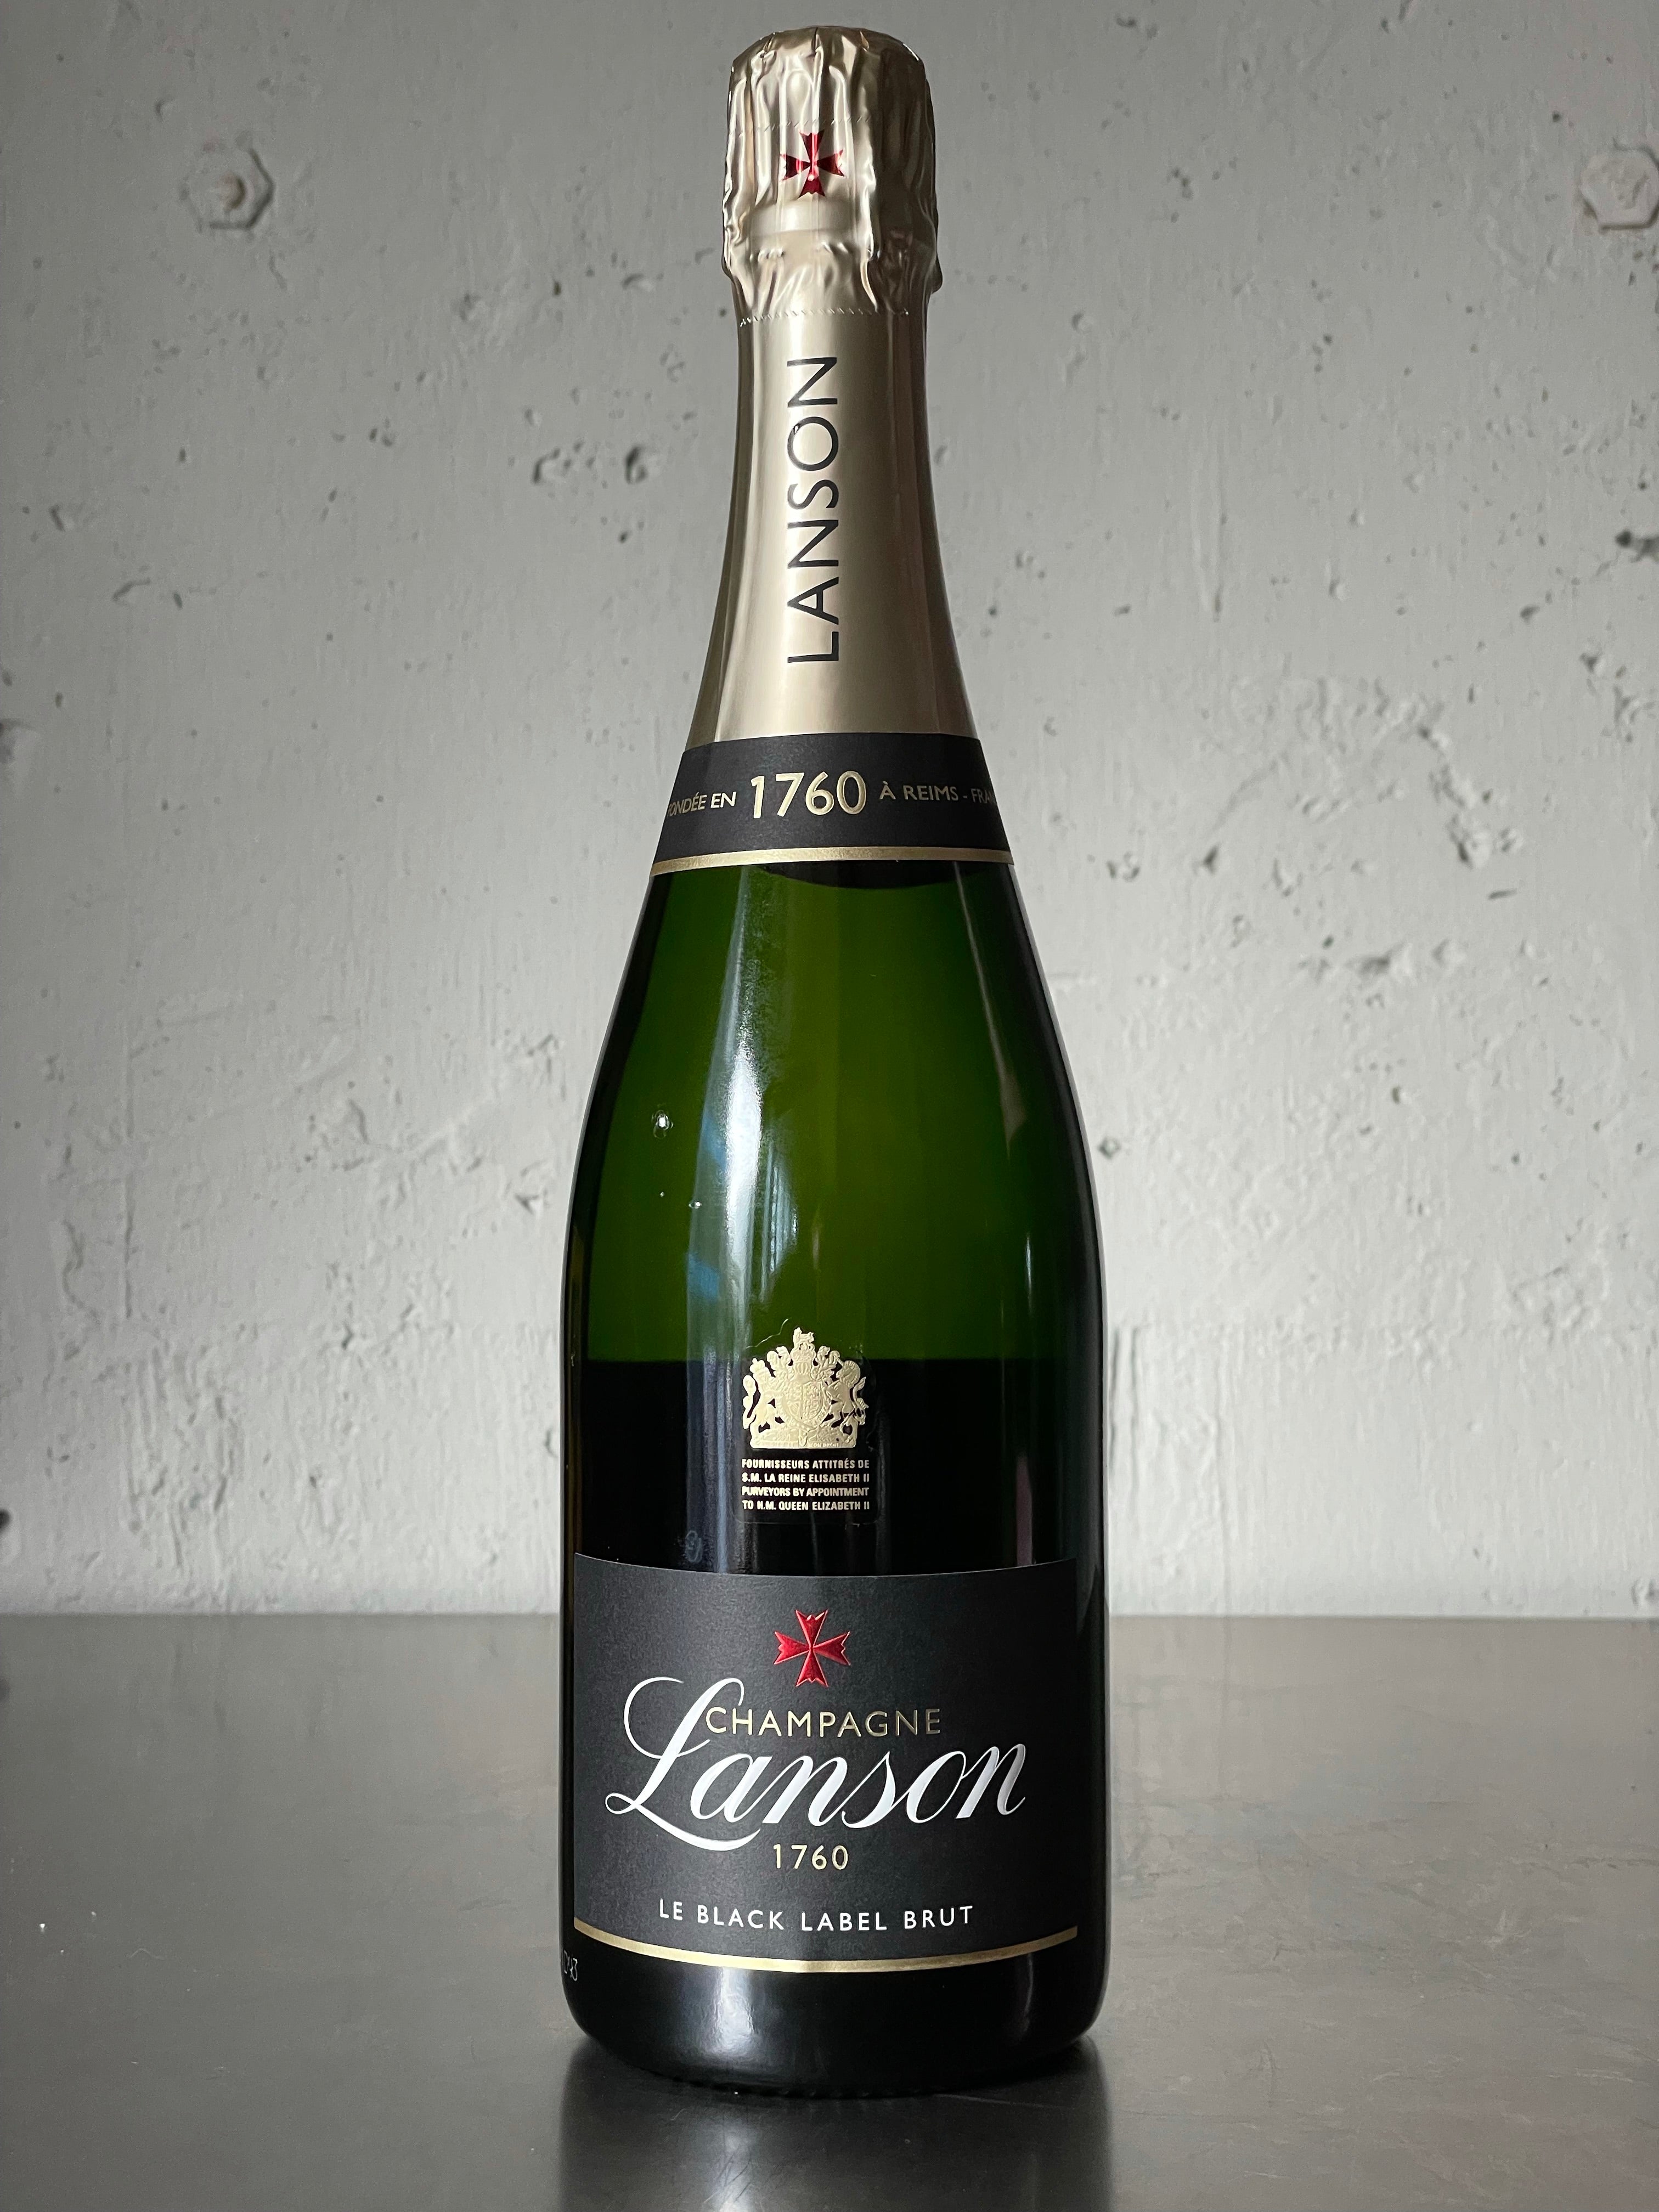 ランソン シャンパン 1500ml